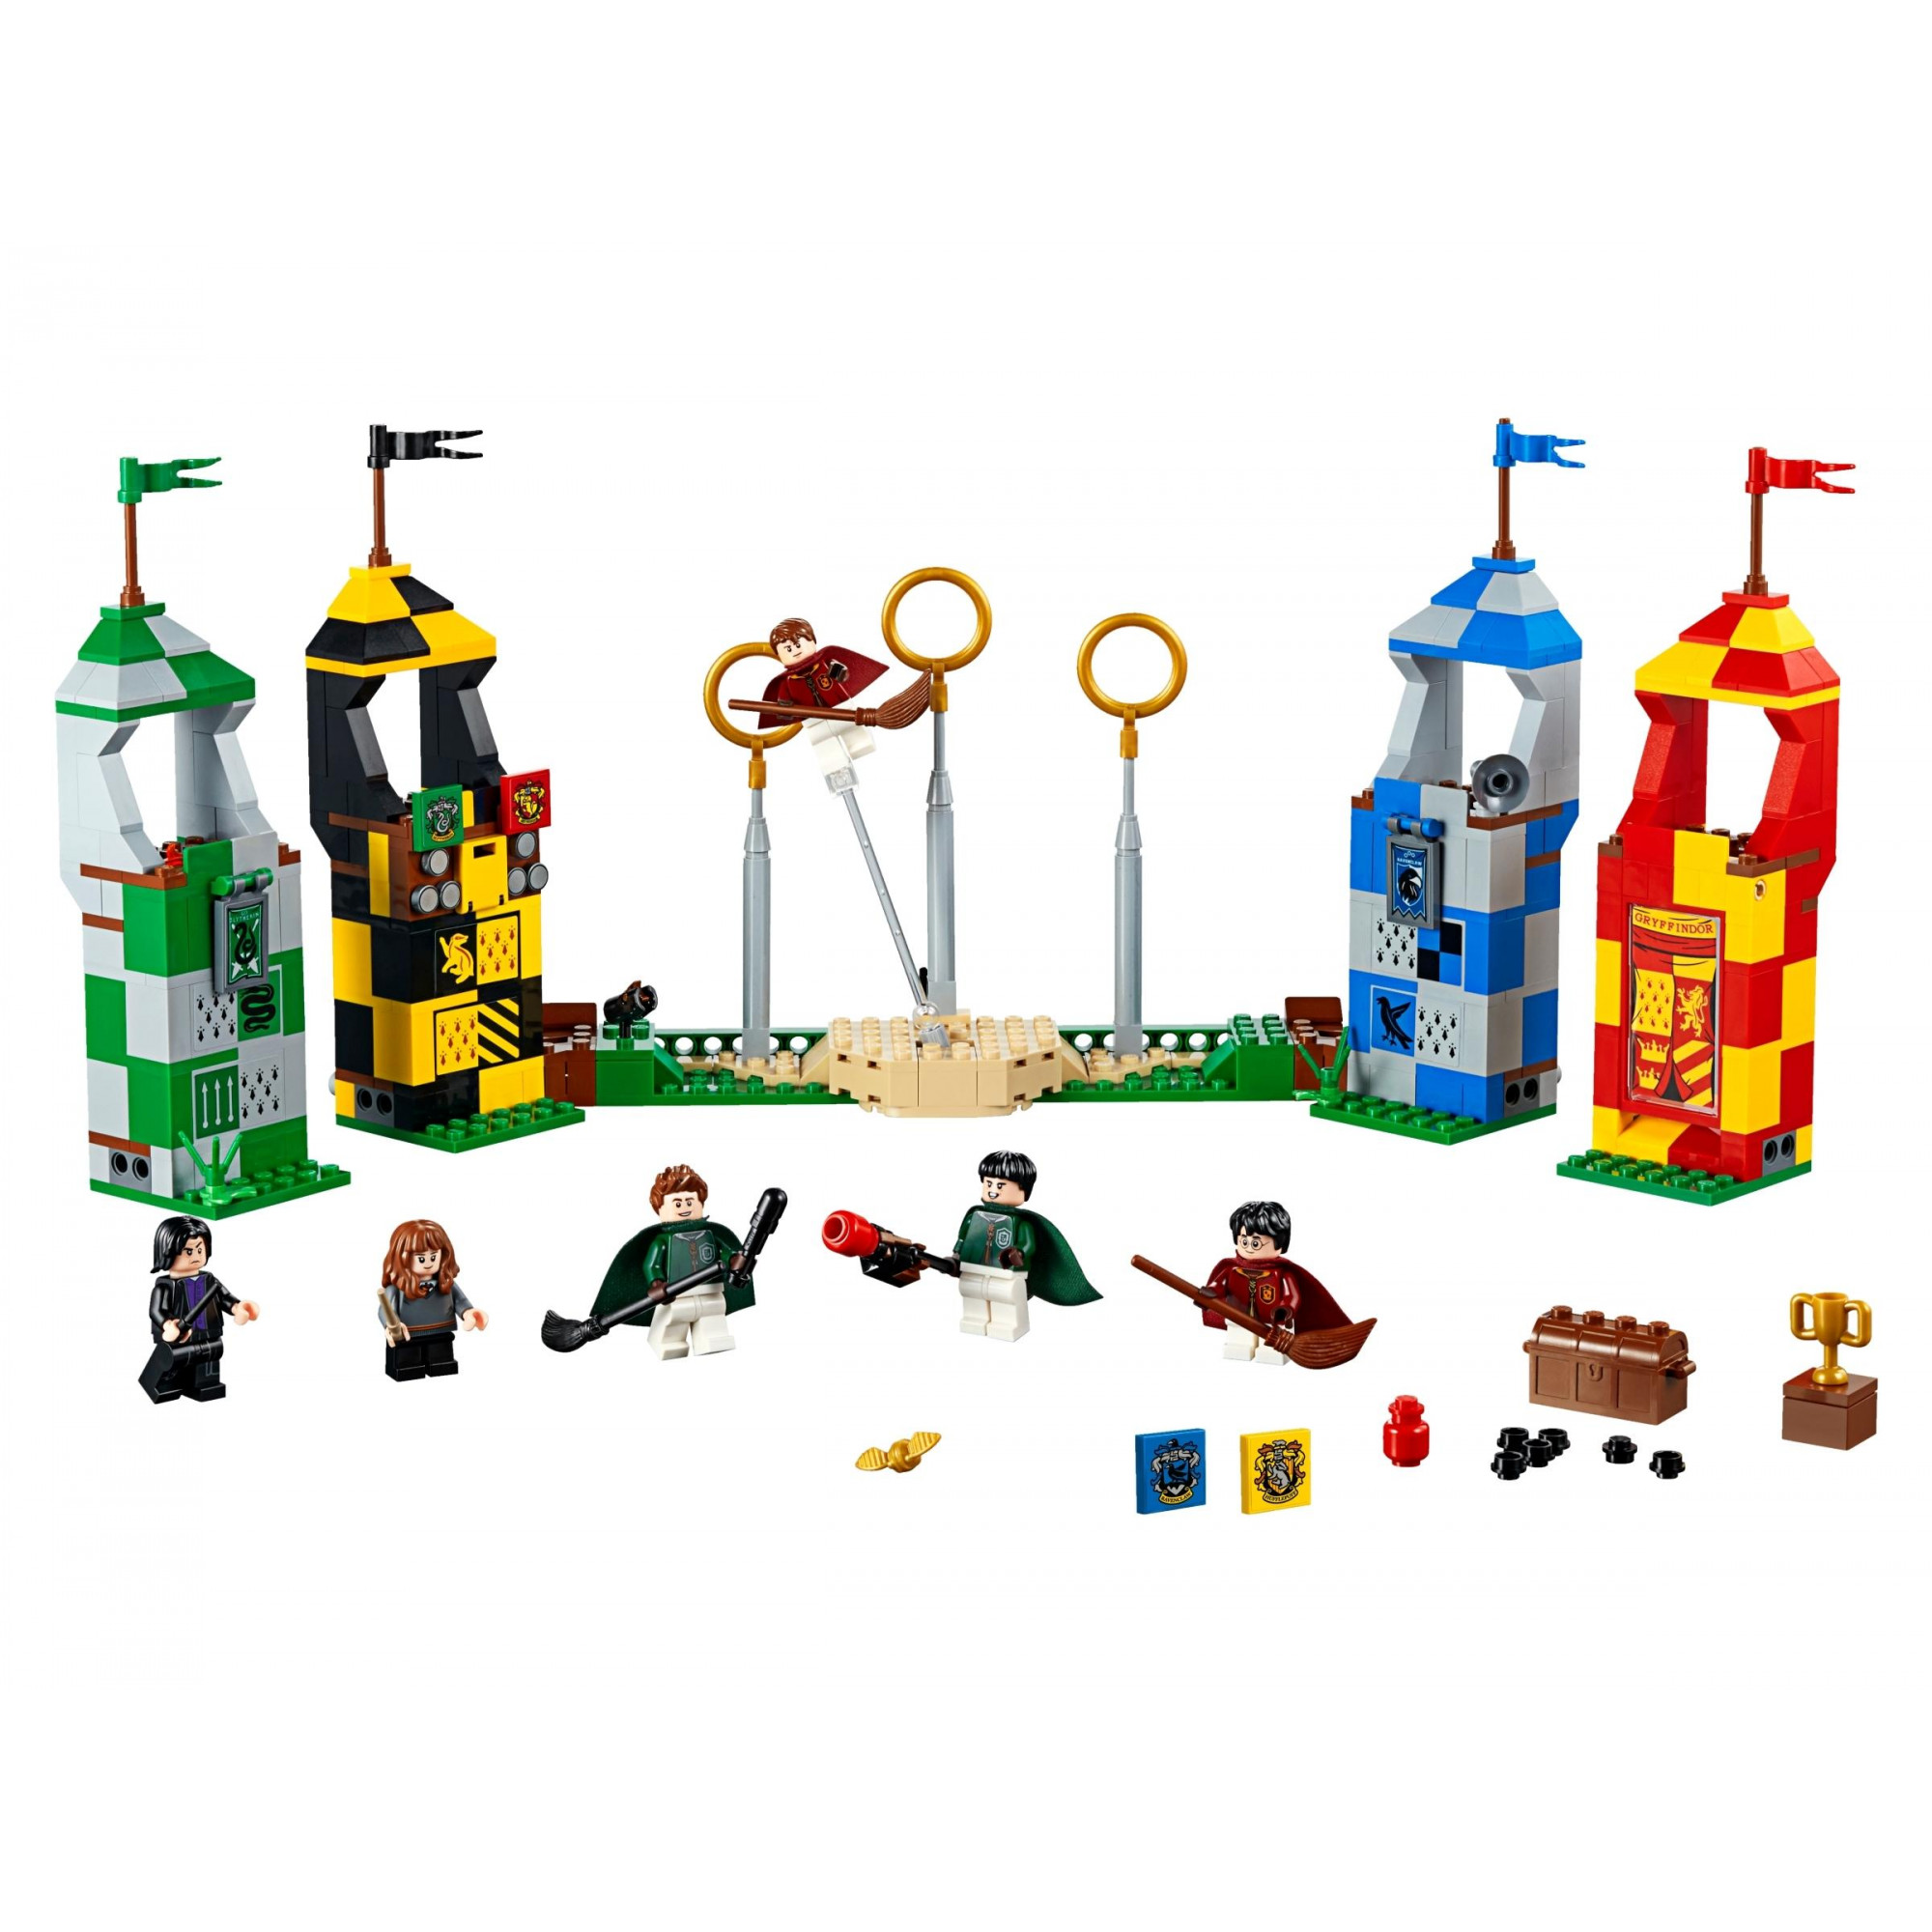 LEGO Матч Квиддич (75956) - зображення 1